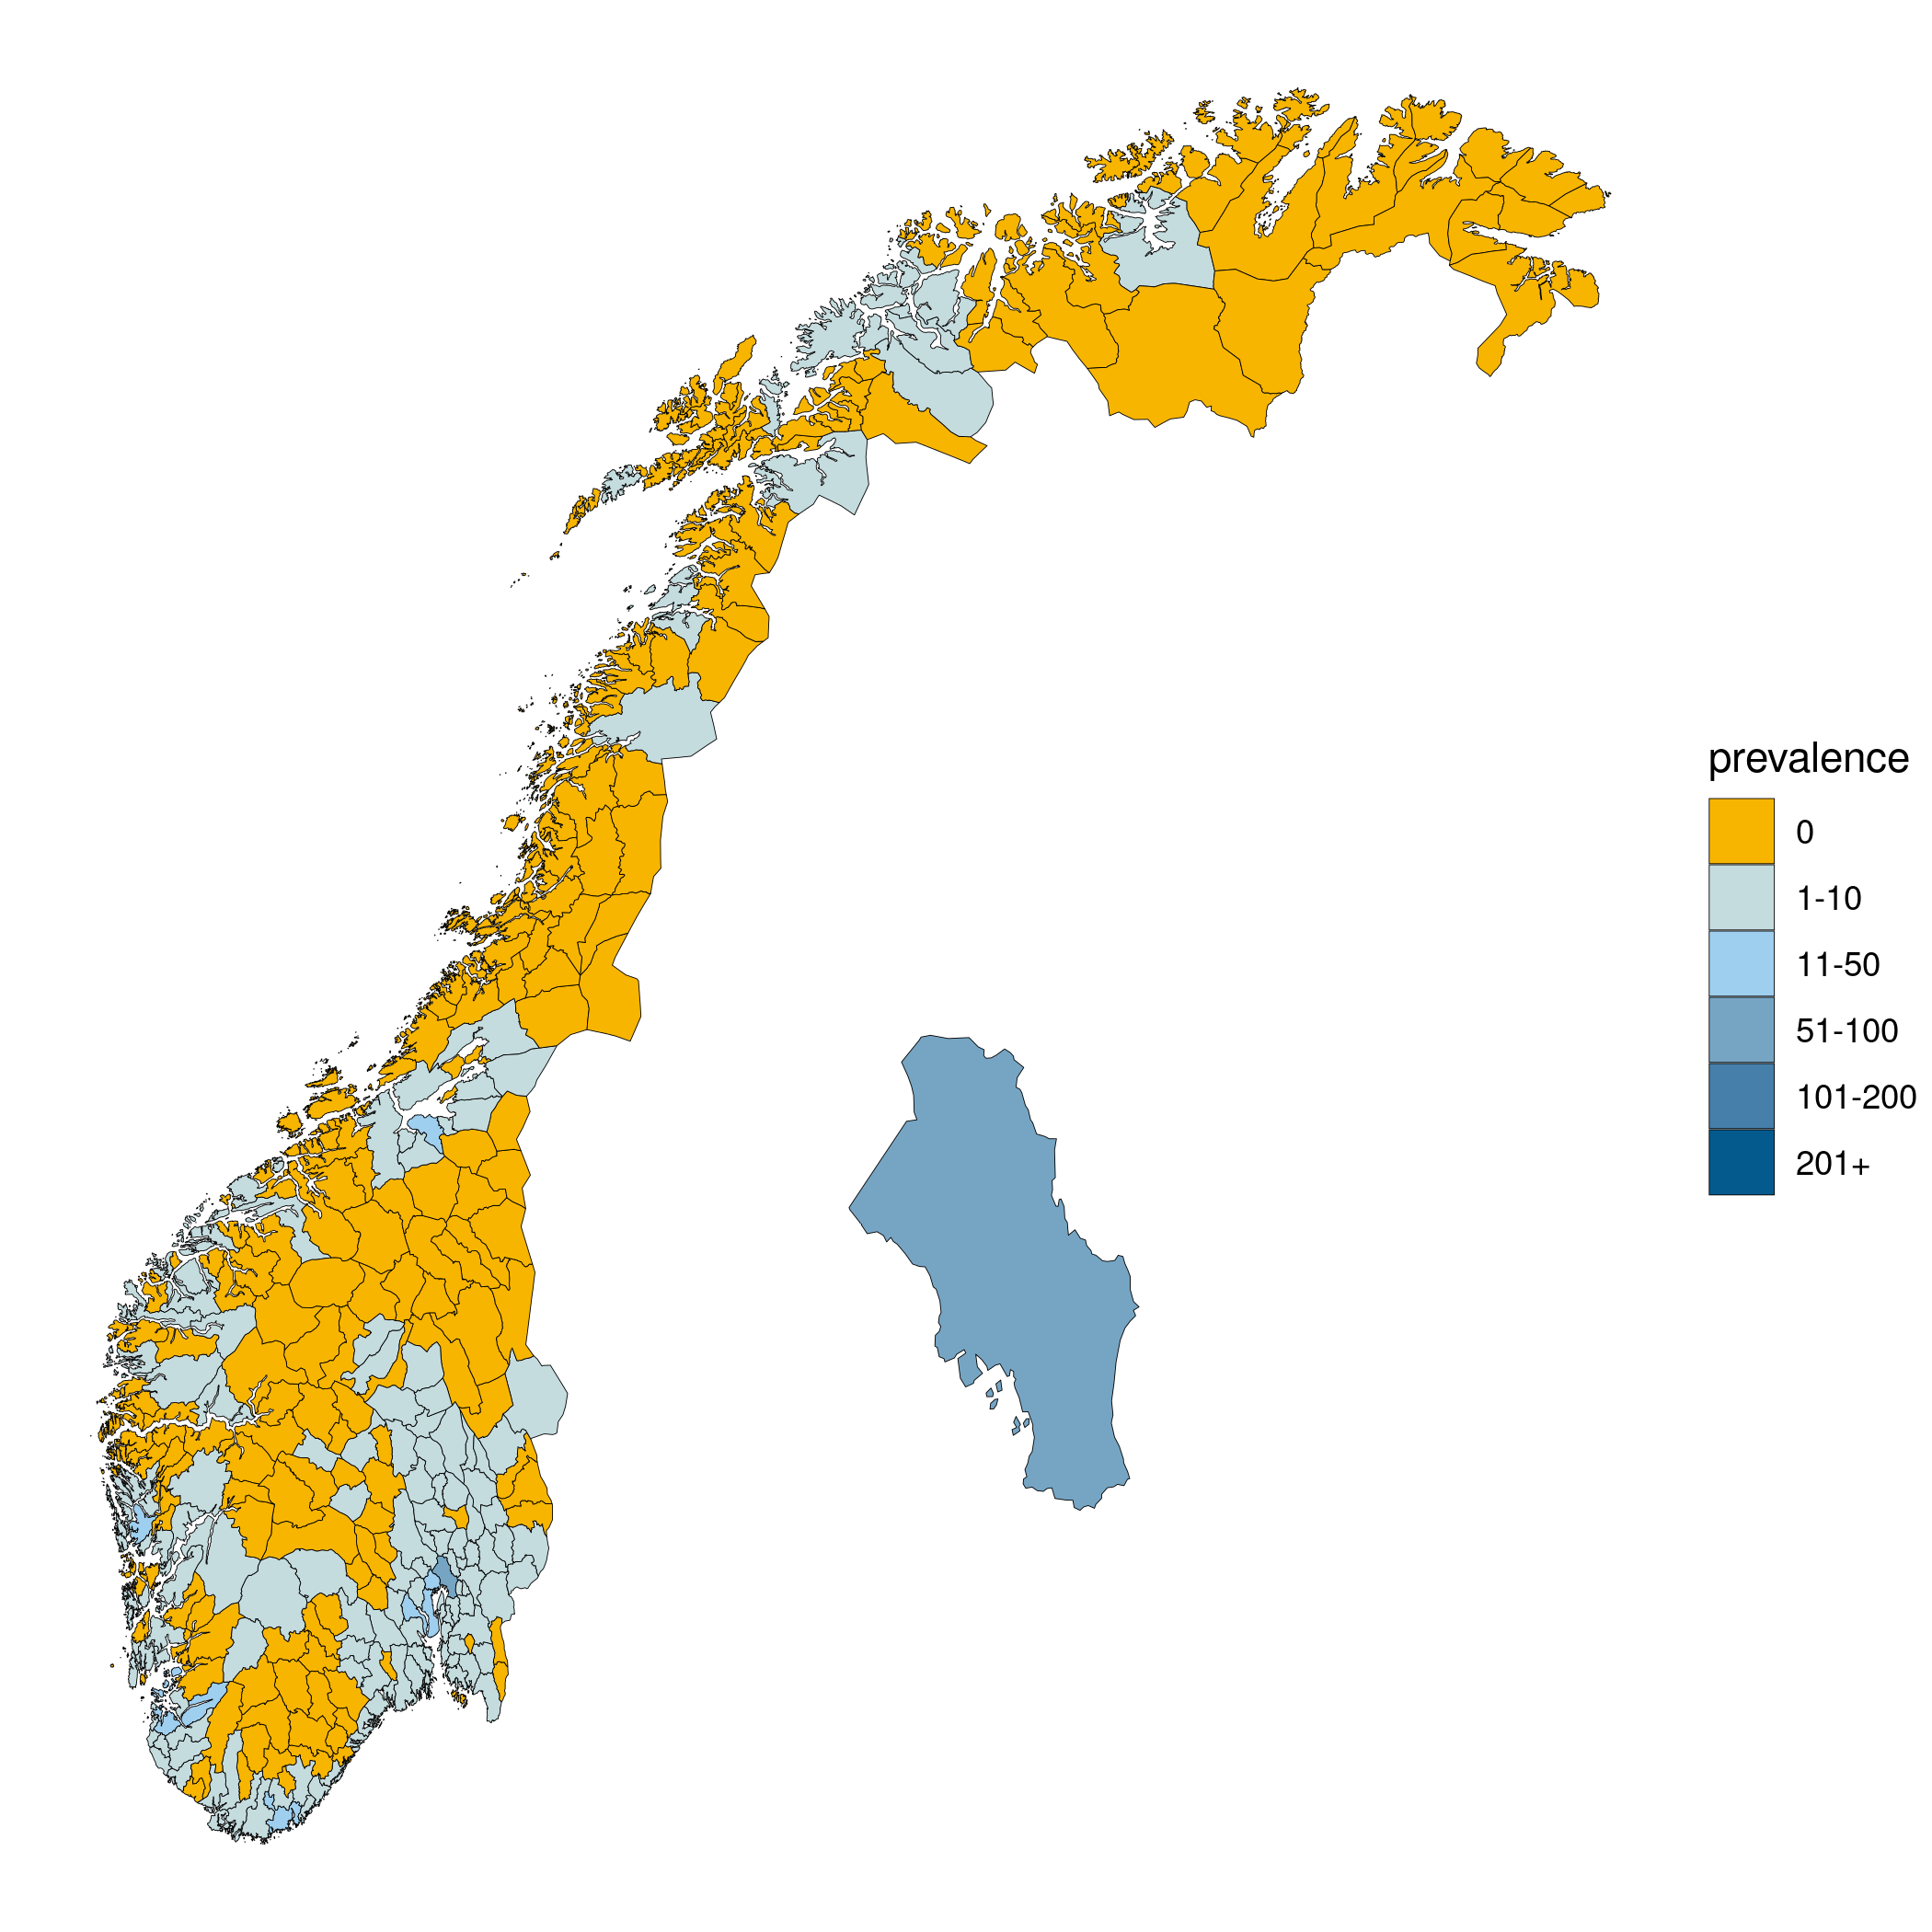 kommuner kart over norge Disse Kommunene Regnes Som Helt Smittefrie Vg kommuner kart over norge